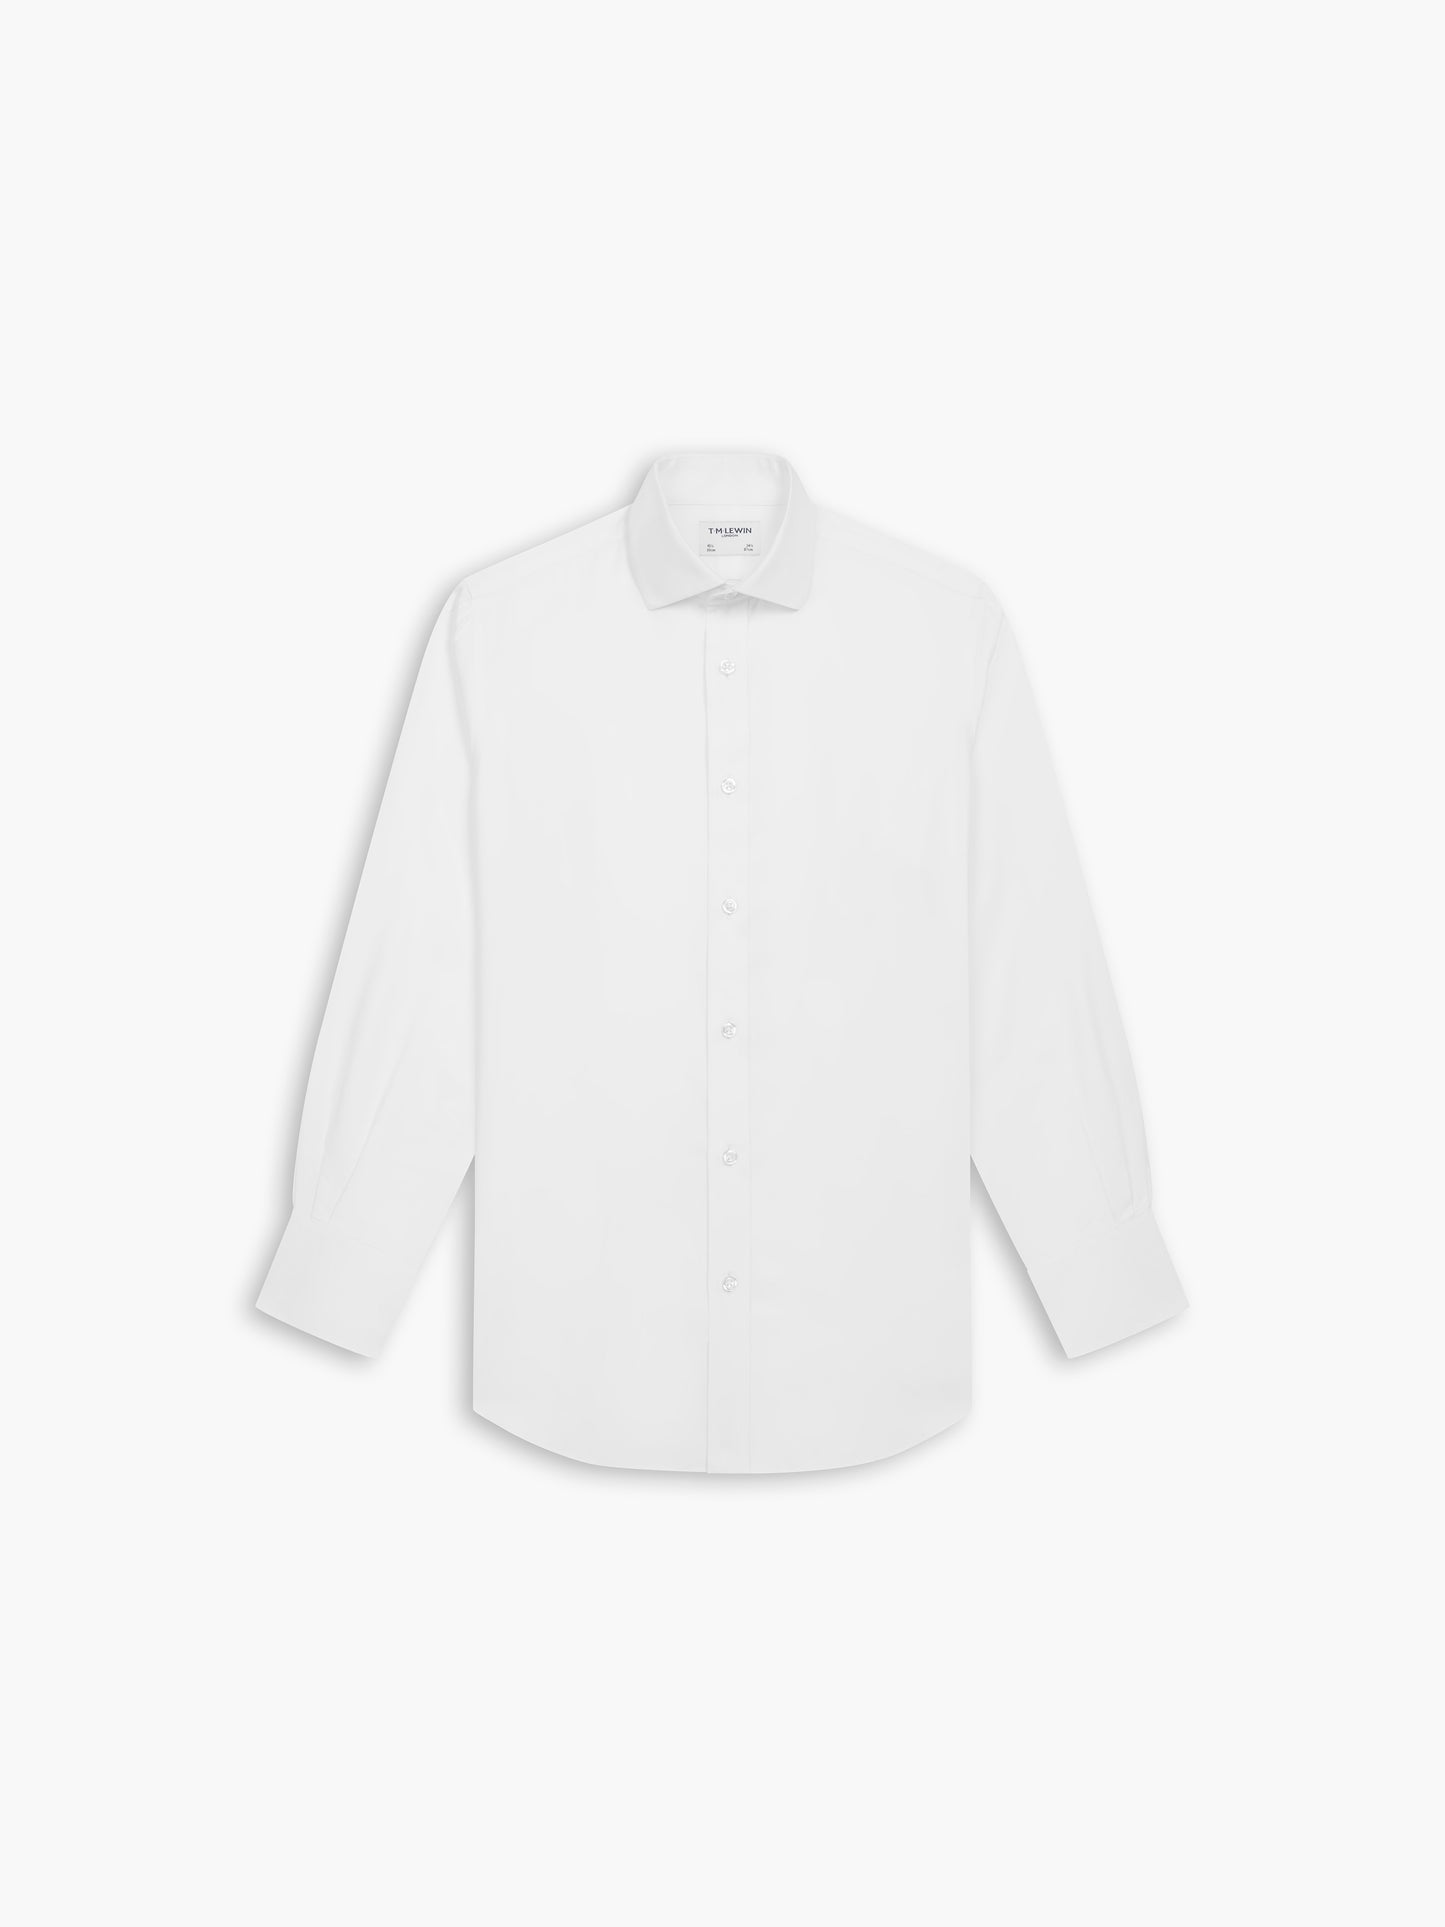 Non-Iron White Oxford Slim Fit Single Cuff Classic Collar Shirt